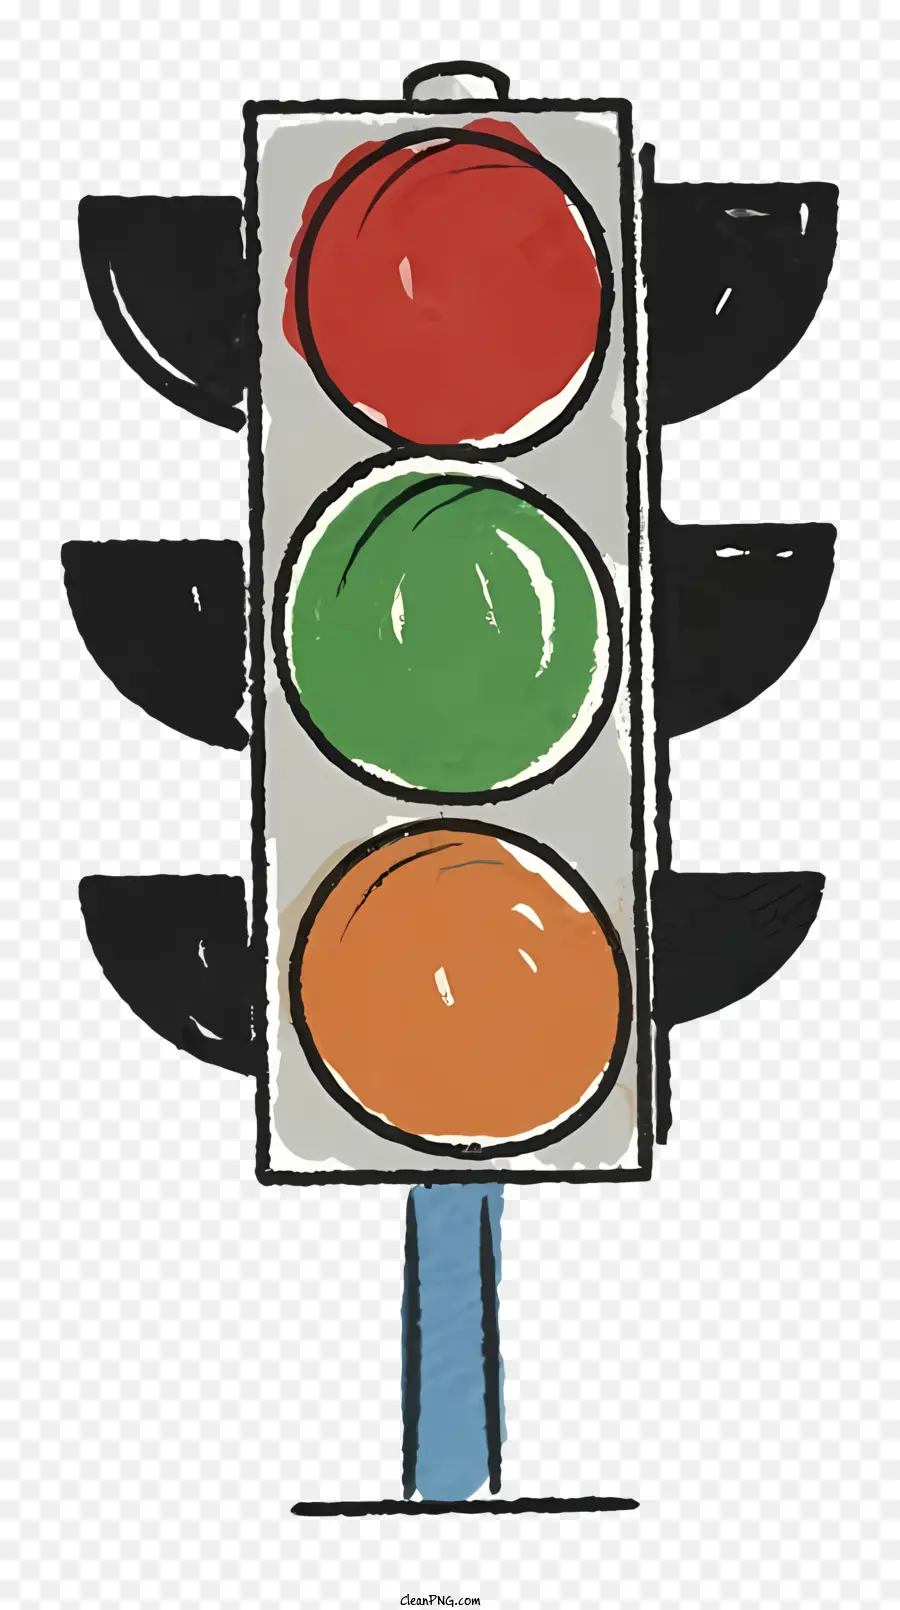 đèn giao thông - Đèn giao thông đơn giản trên cột kim loại có đèn